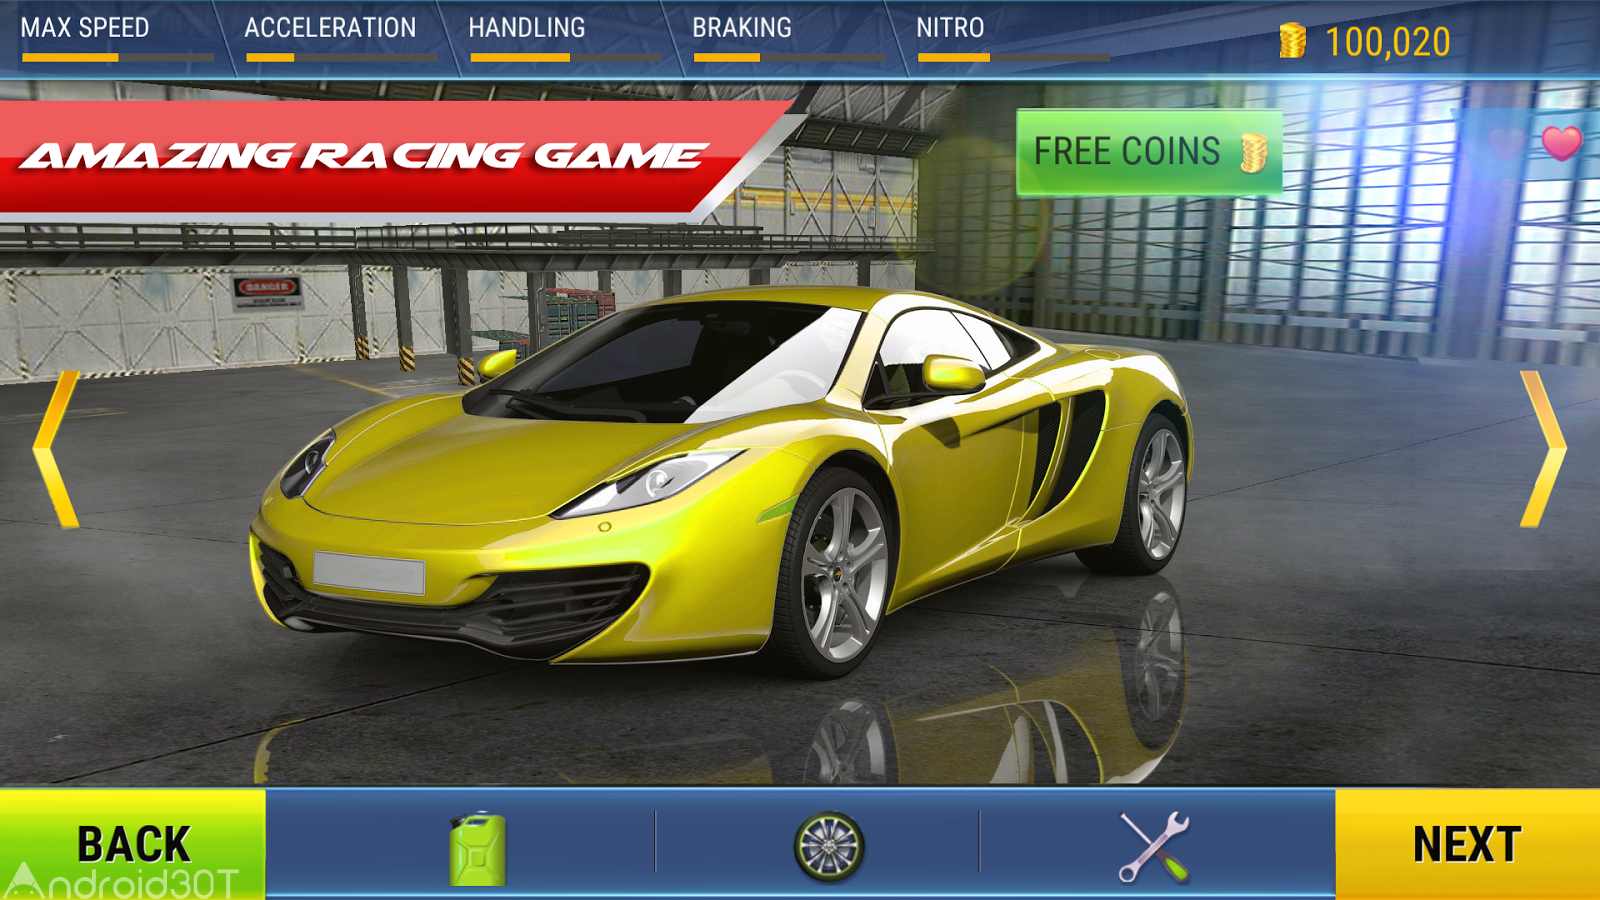 دانلود Mad 3D：Highway Racing 1.1 – بازی ماشین سواری اتوبان اندروید